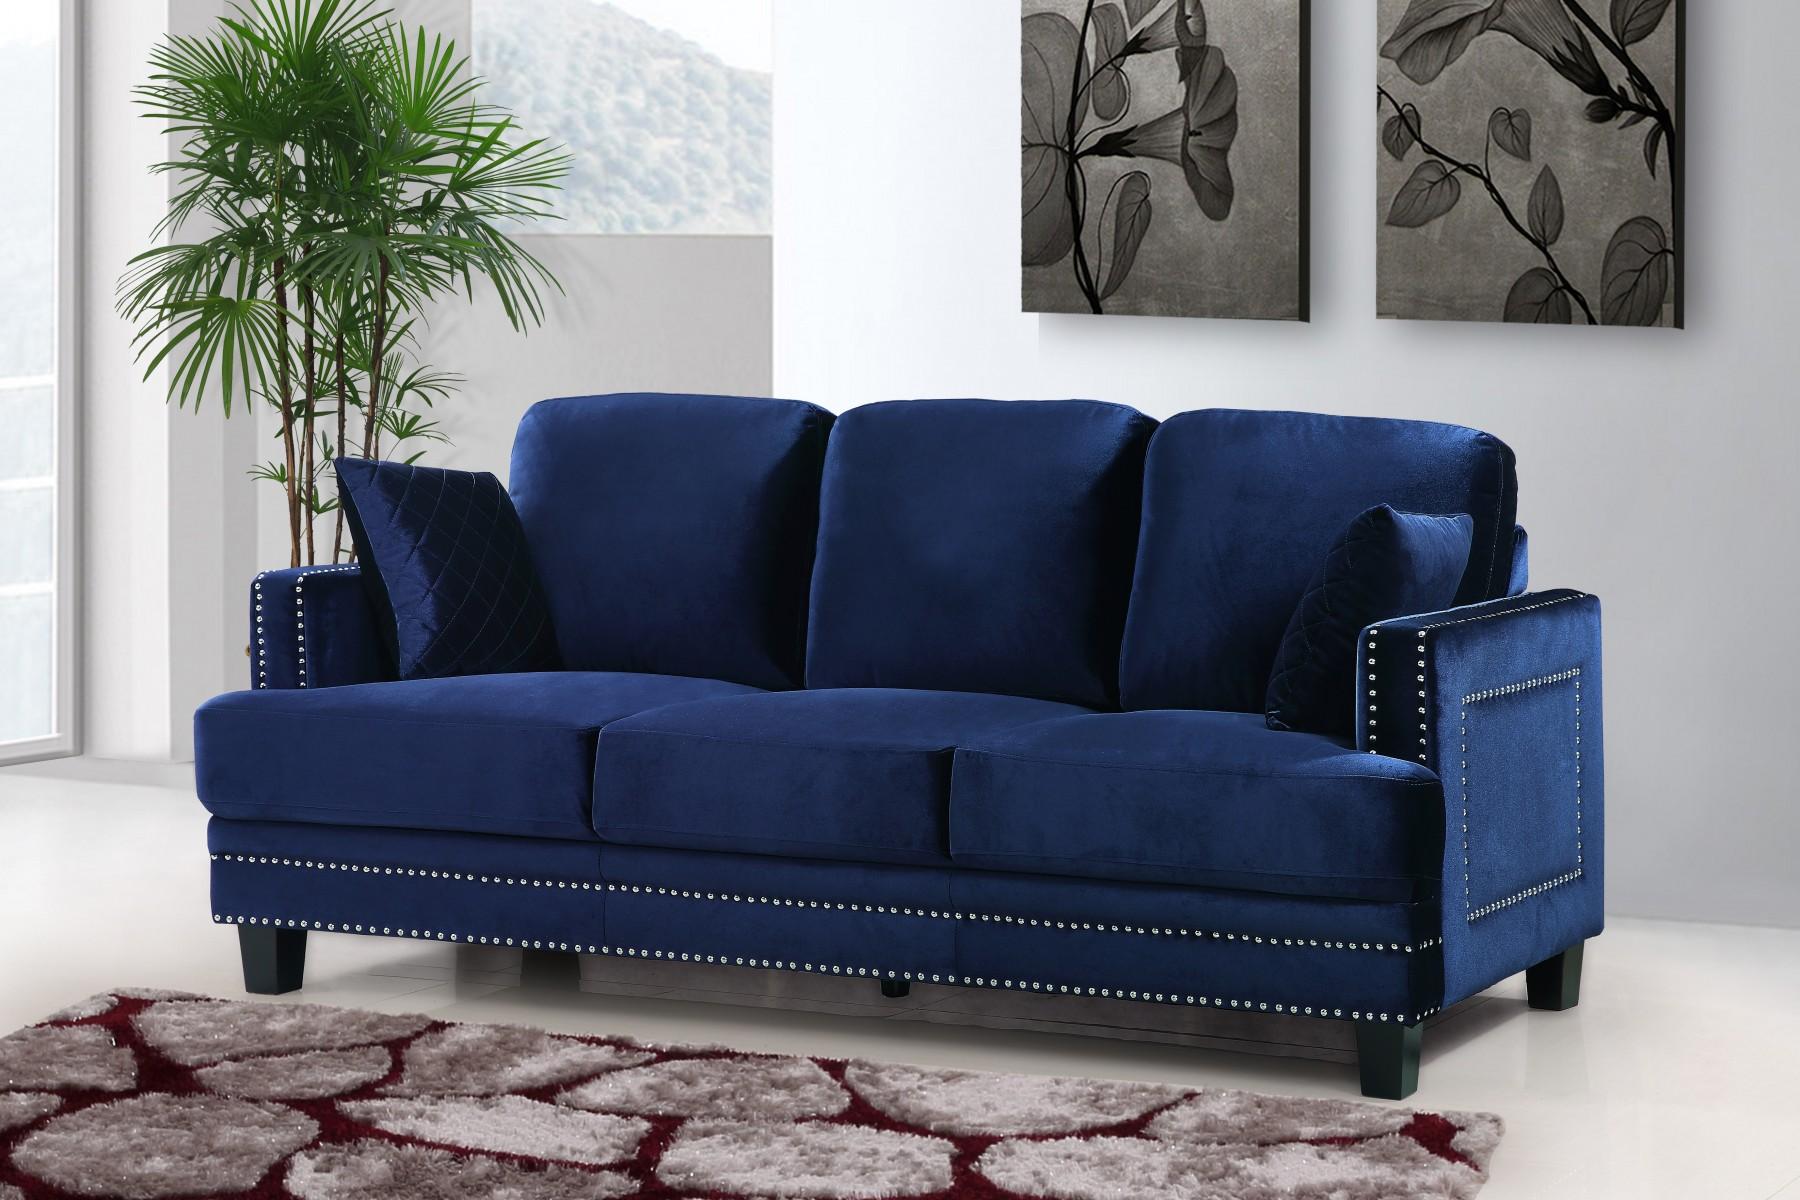 

    
Meridian Furniture 655 Ferrara Sofa & Loveseat Set 2 Pcs in Navy Velvet  Modern
